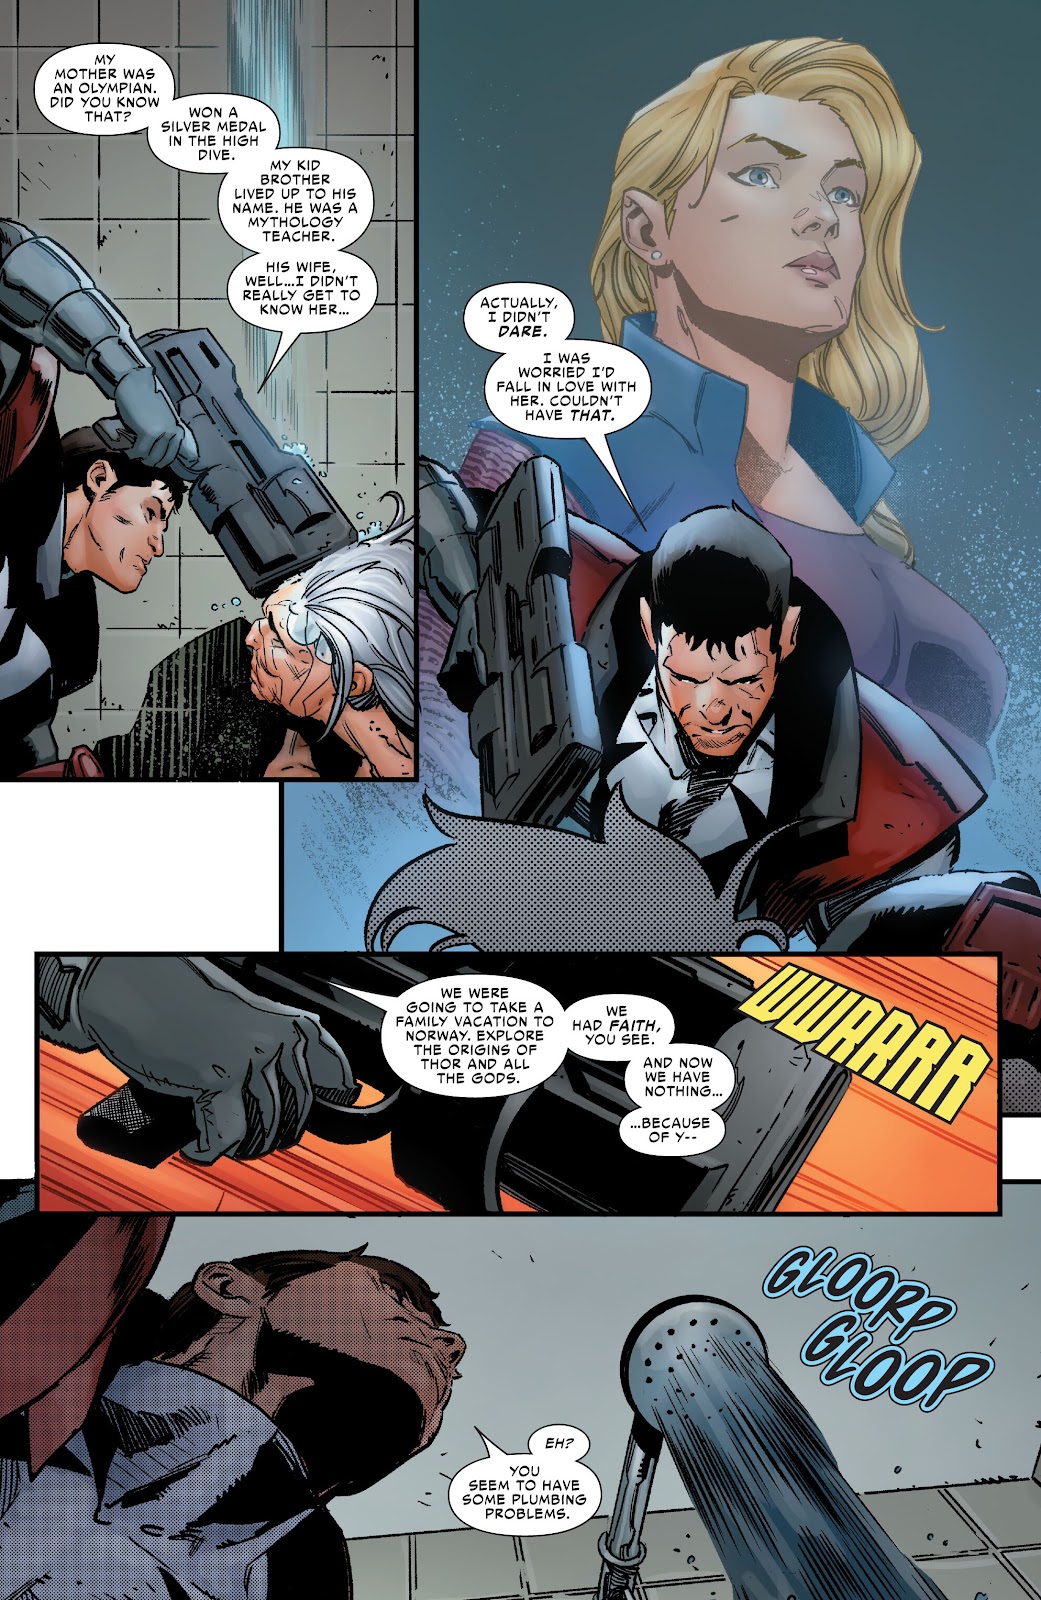 Symbiote Spider-Man 2099 issue 1 - Page 26